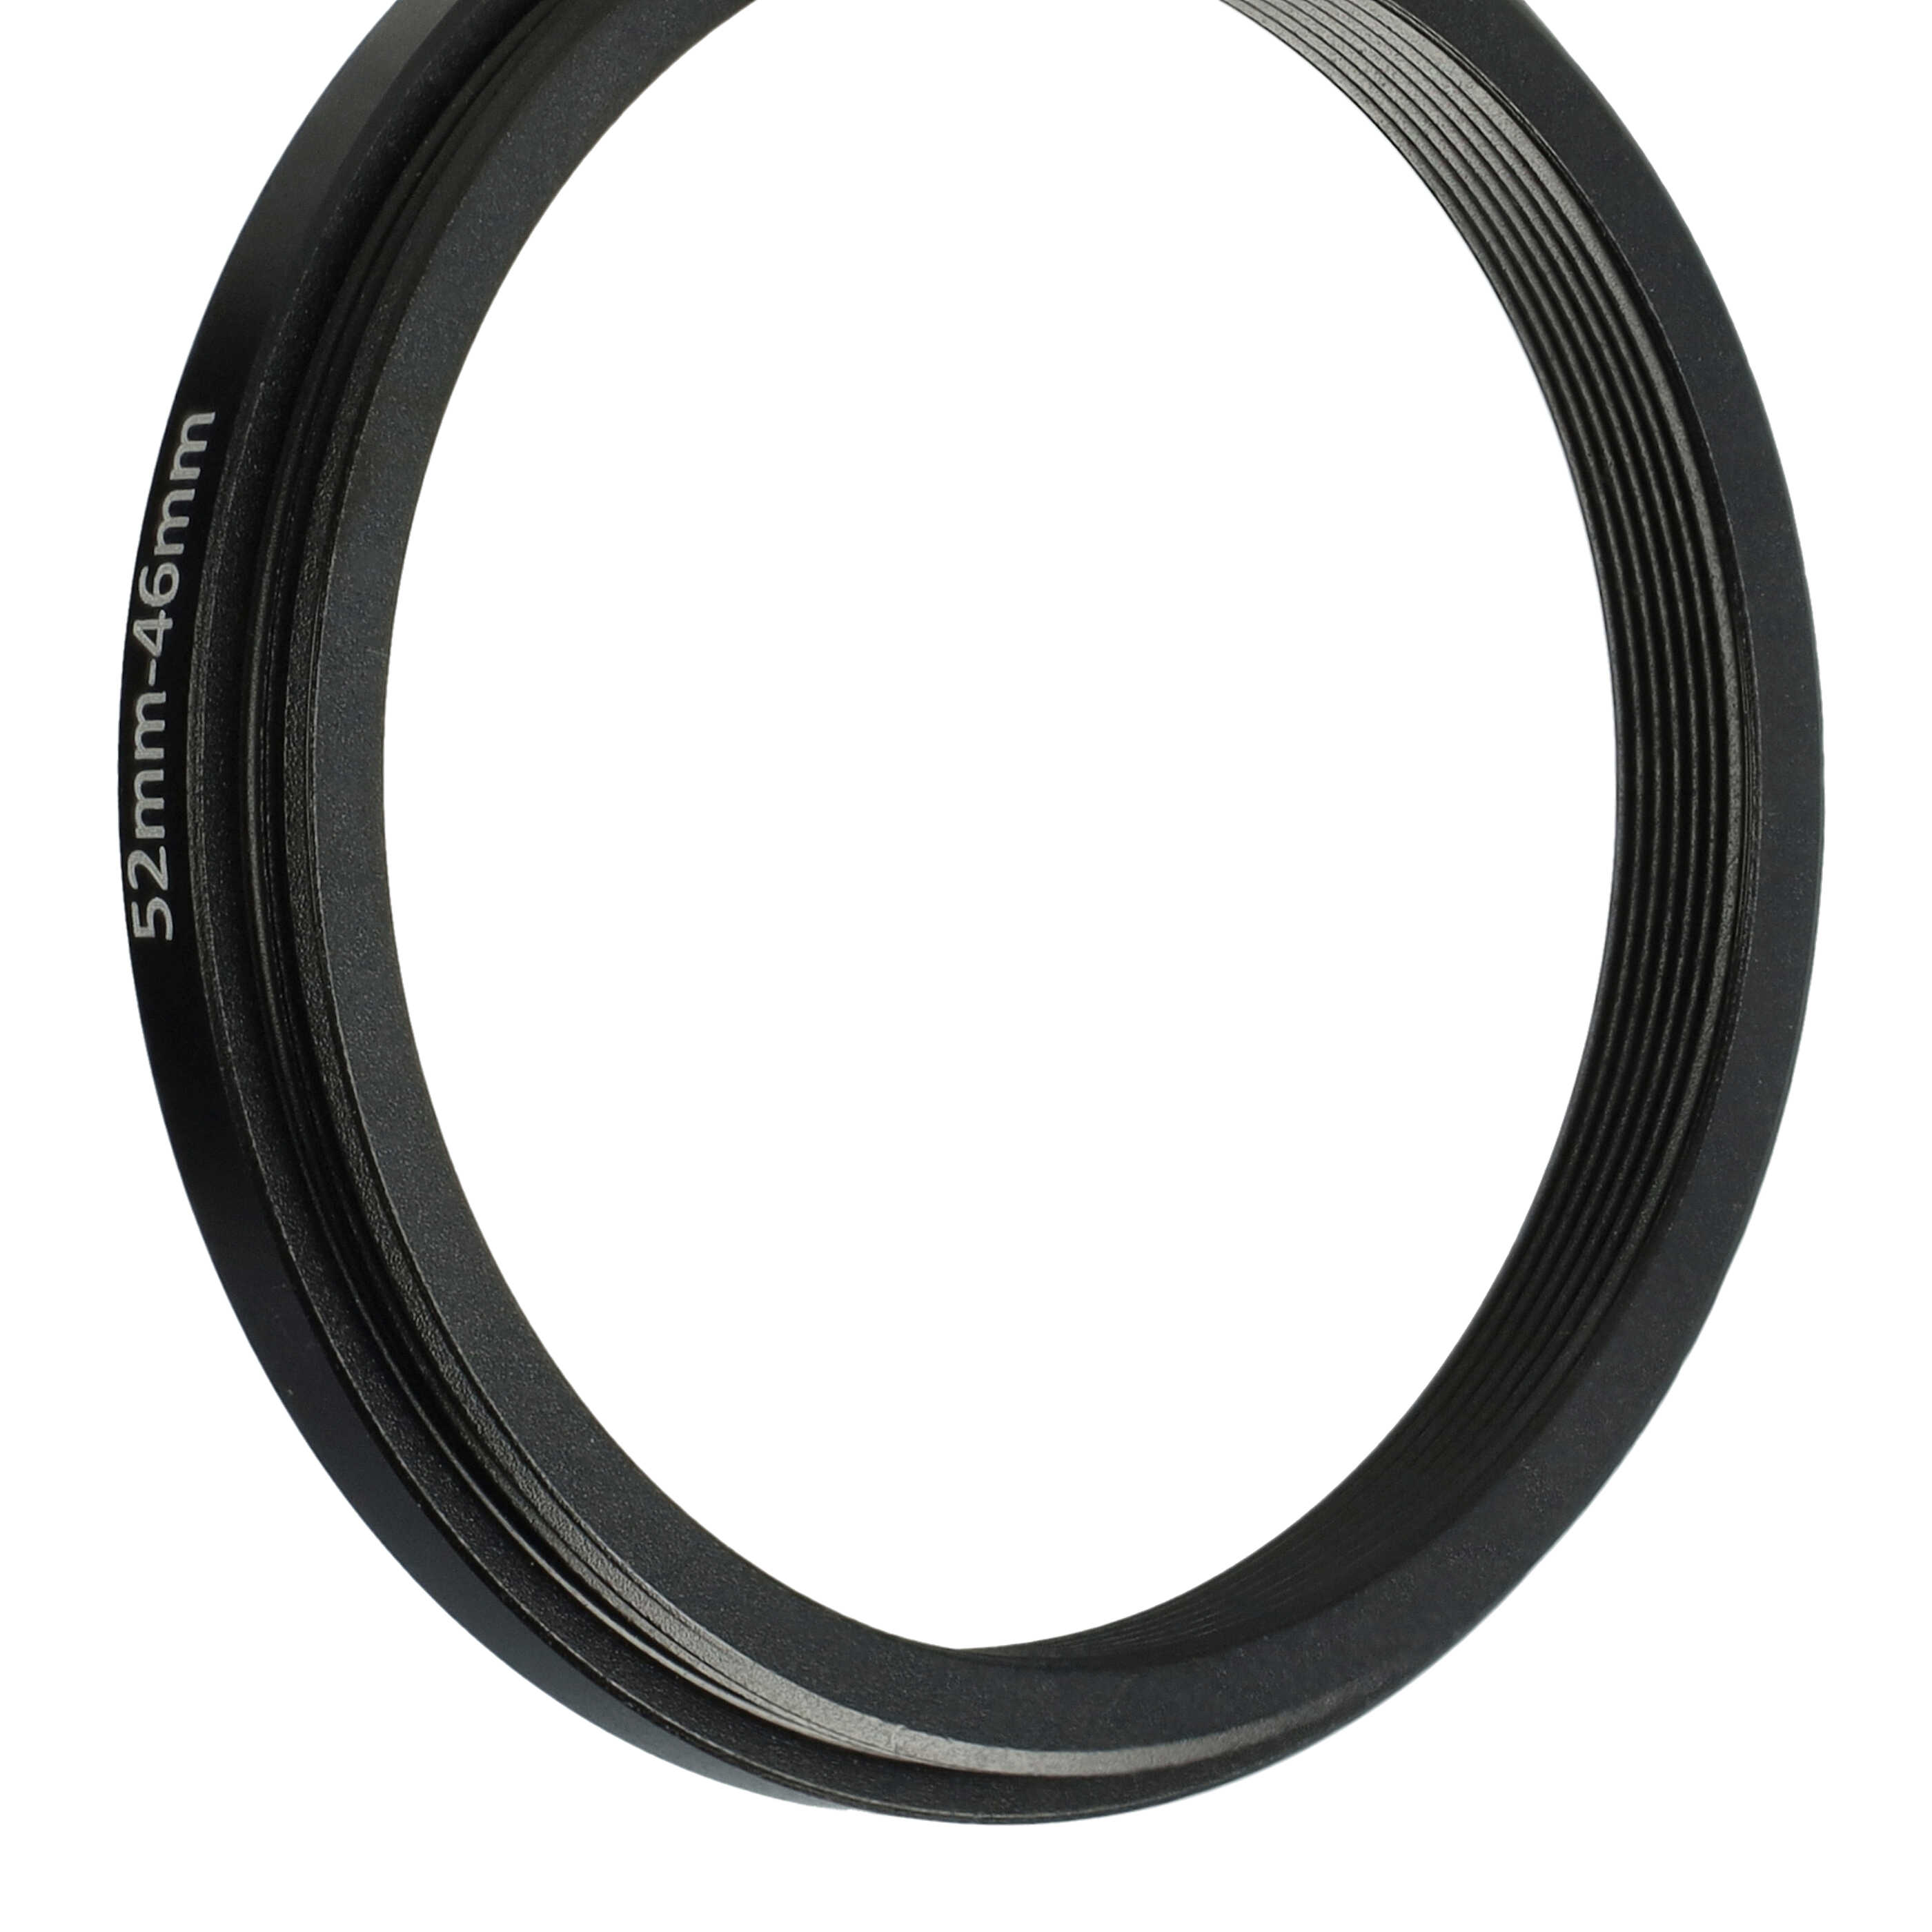 Anillo adaptador Step Down de 52 mm a 46 mm para objetivo de la cámara - Adaptador de filtro, metal, negro